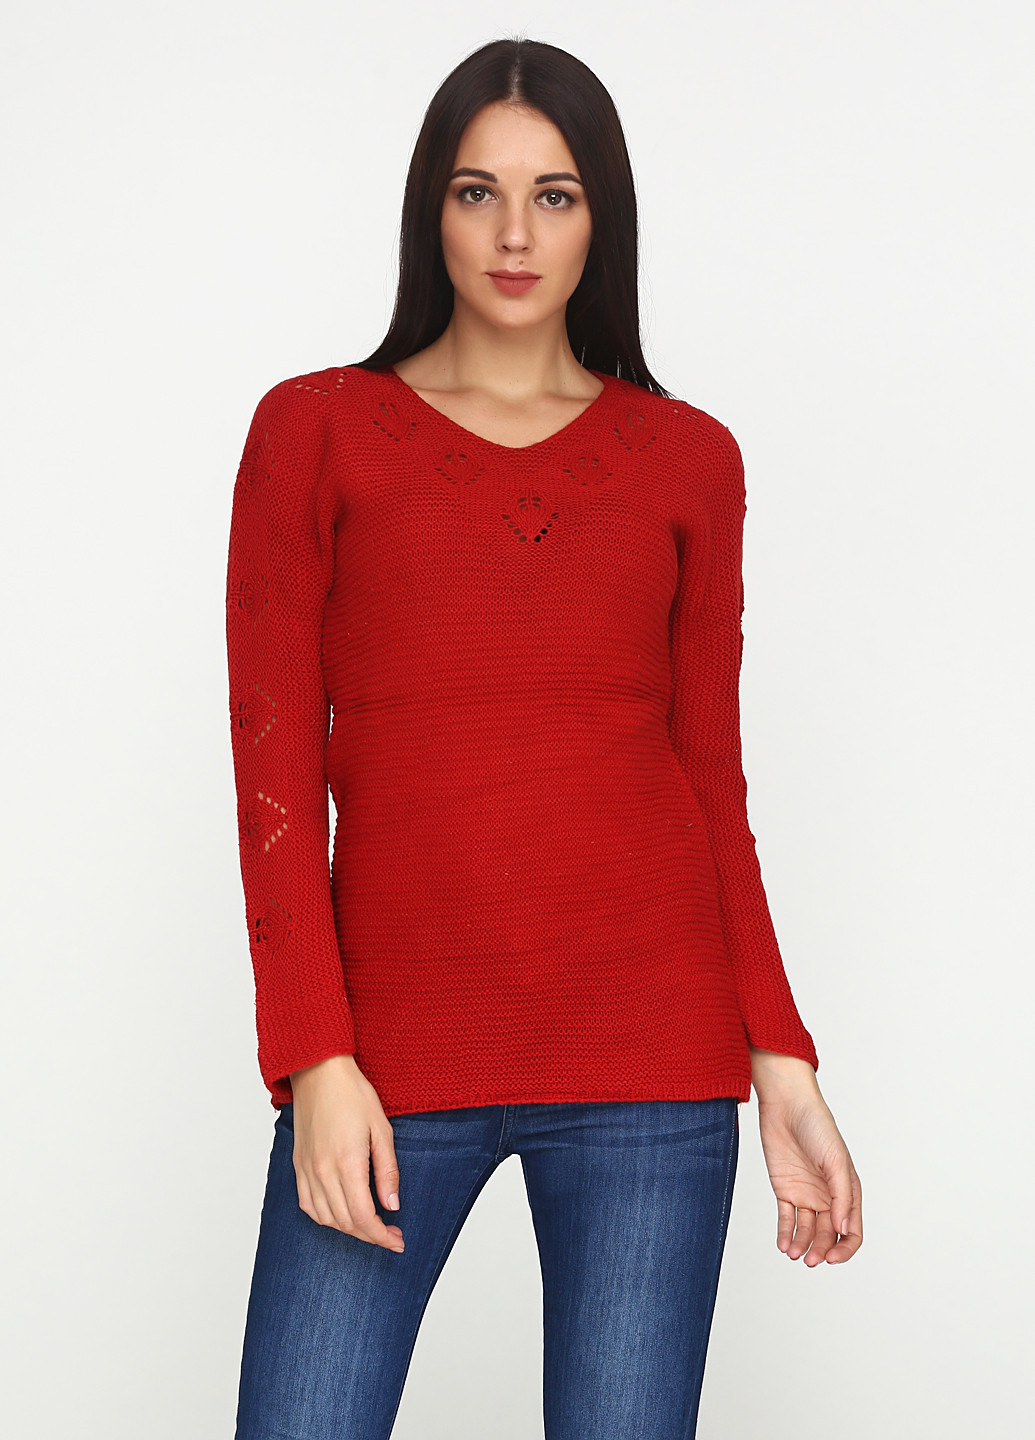 Красный демисезонный пуловер пуловер Eser